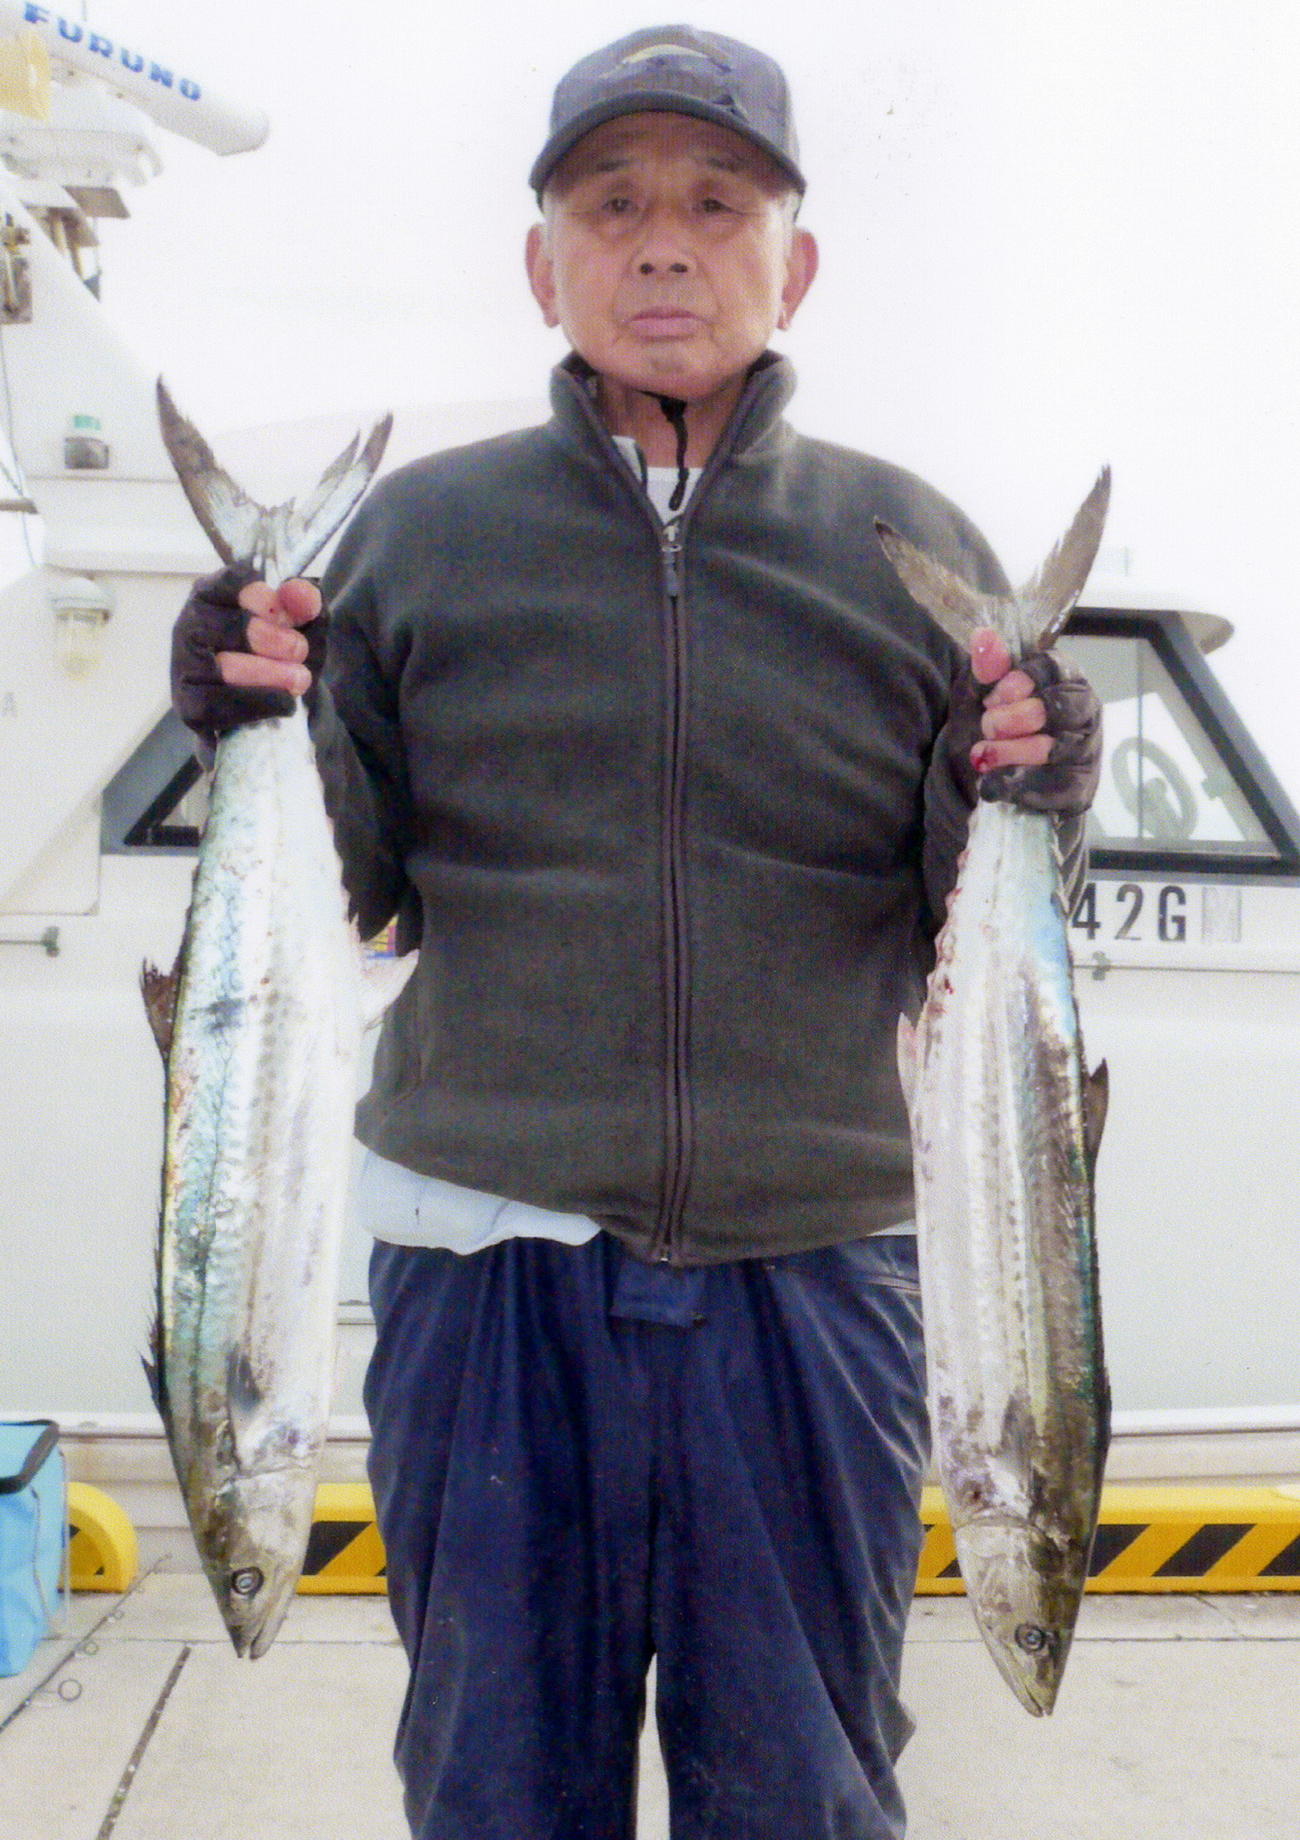 嶋田さんは80センチと77センチのサワラを釣り上げて善松丸の年間王者に